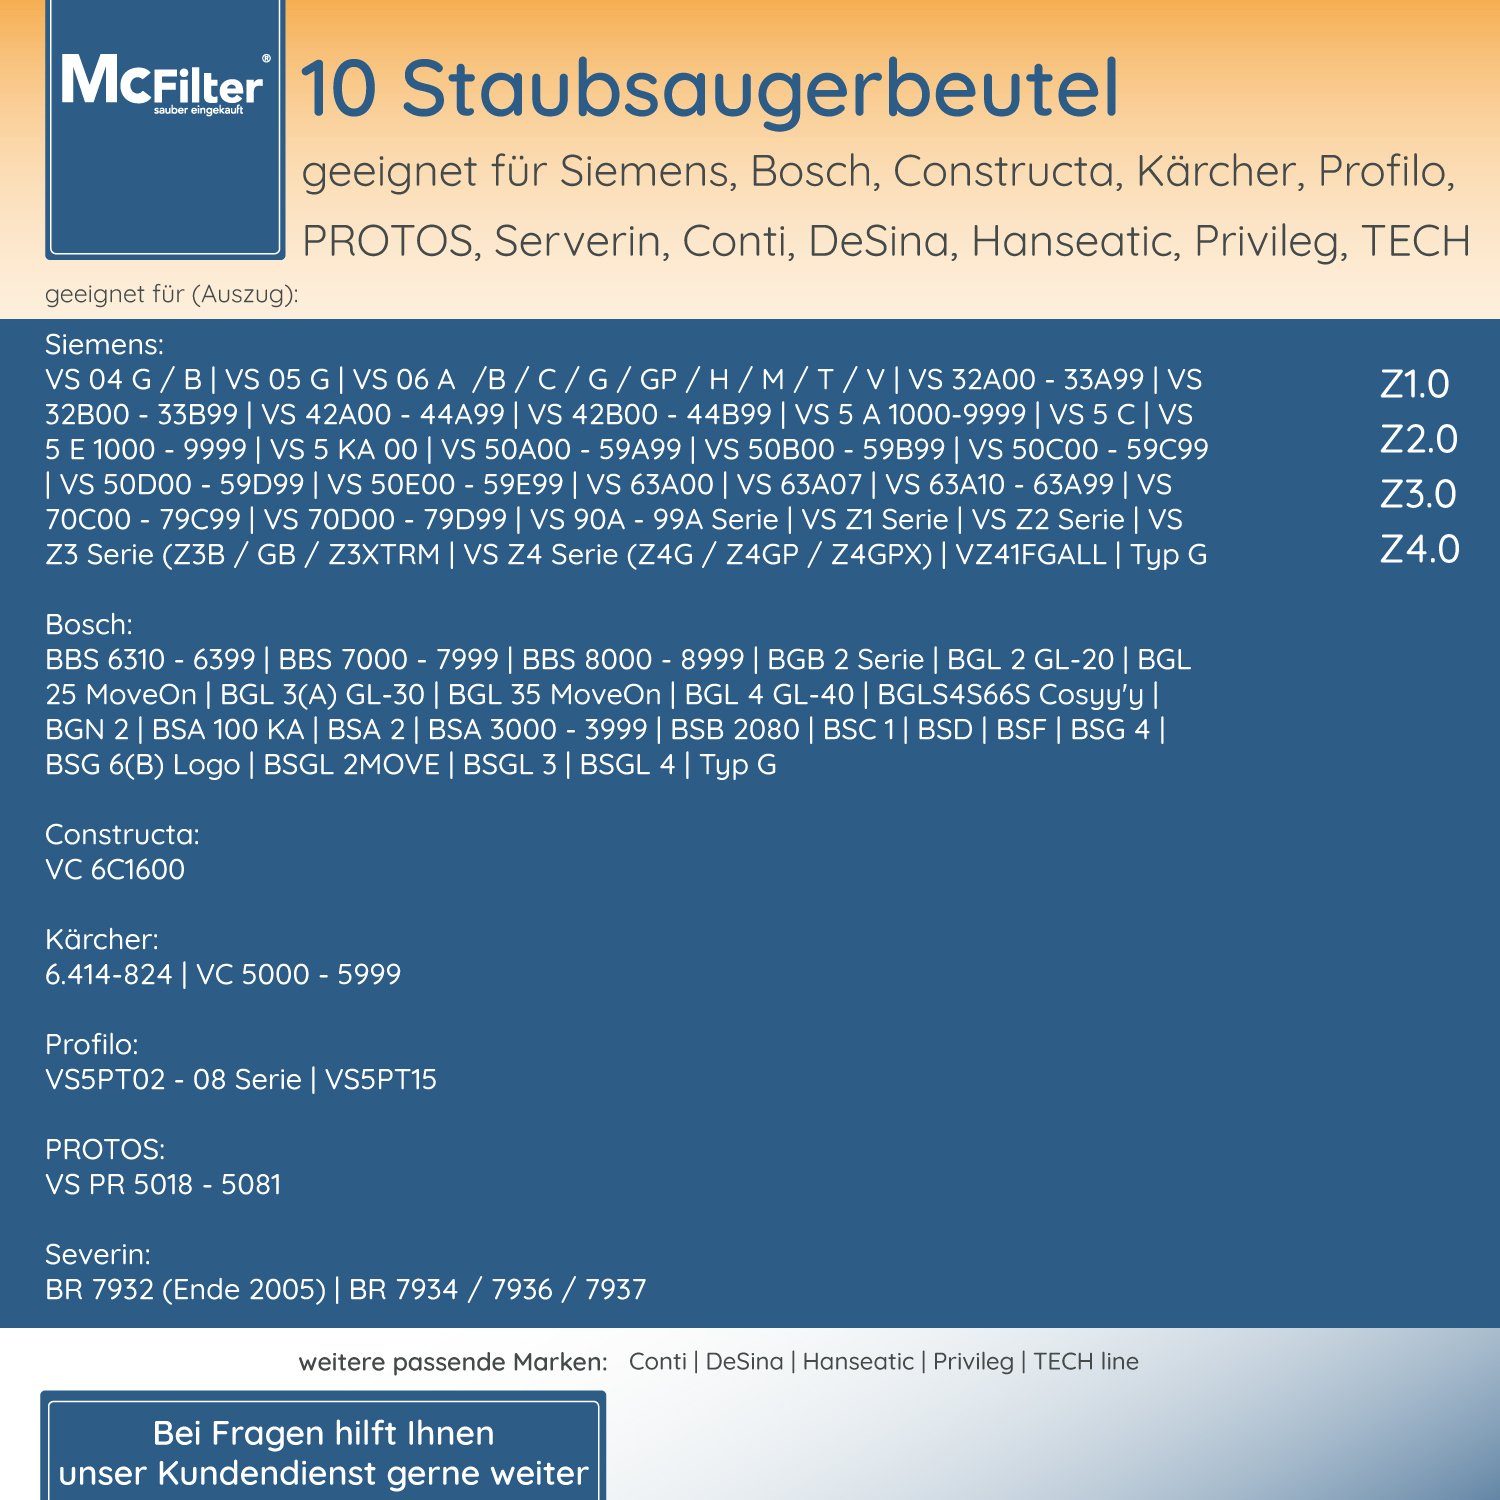 McFilter Staubsaugerbeutel geeignet für 5-lagiger für Staubsauger, Filter BBZ41FGALL, passend BGL6TPET Hygieneverschluss, 30 Staubbeutel Bosch, St., mit wie Serie inkl. ProAnimal 6